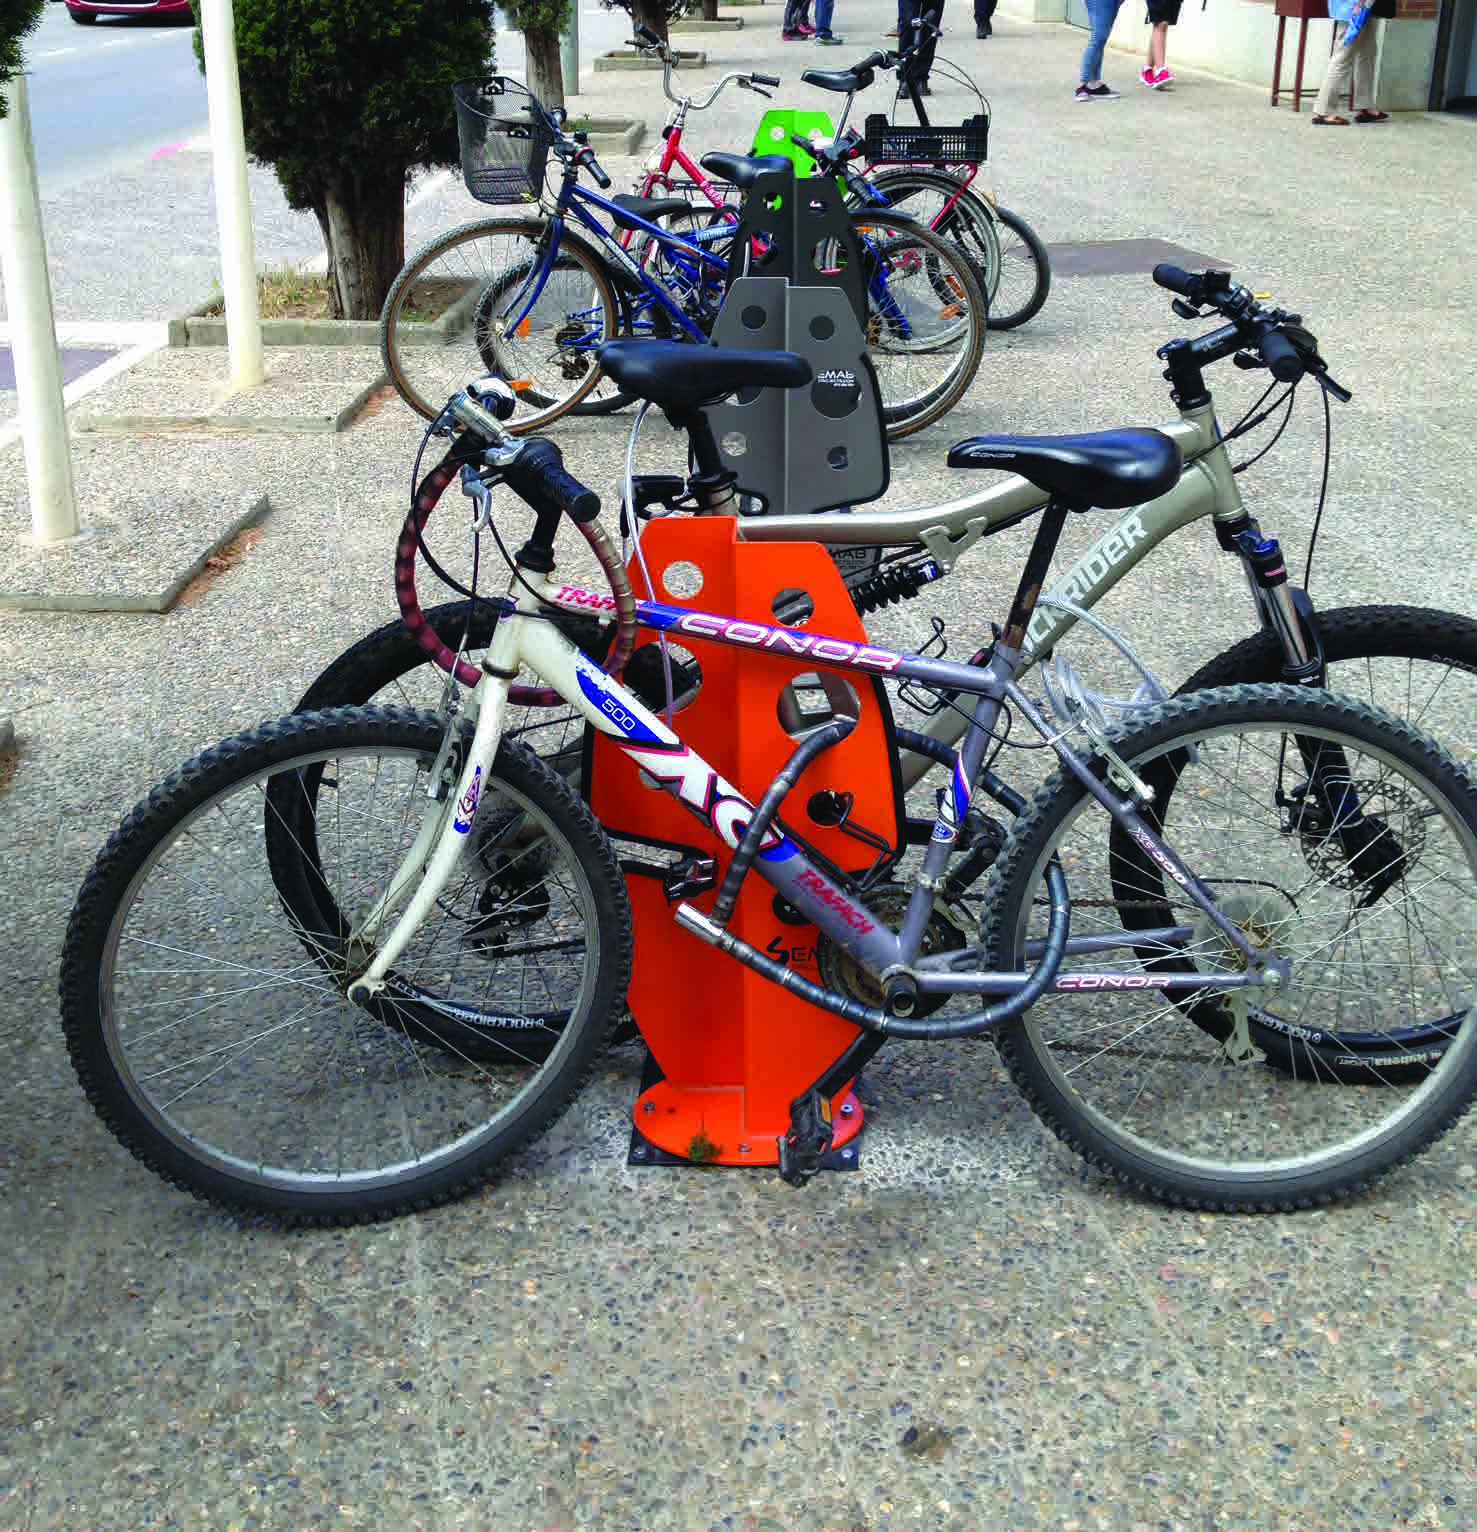 Over Semab Projects Semab is een jonge onderneming die zich richt op het bedenken en creëren van slimme parkeeroplossingen voor fietsen.